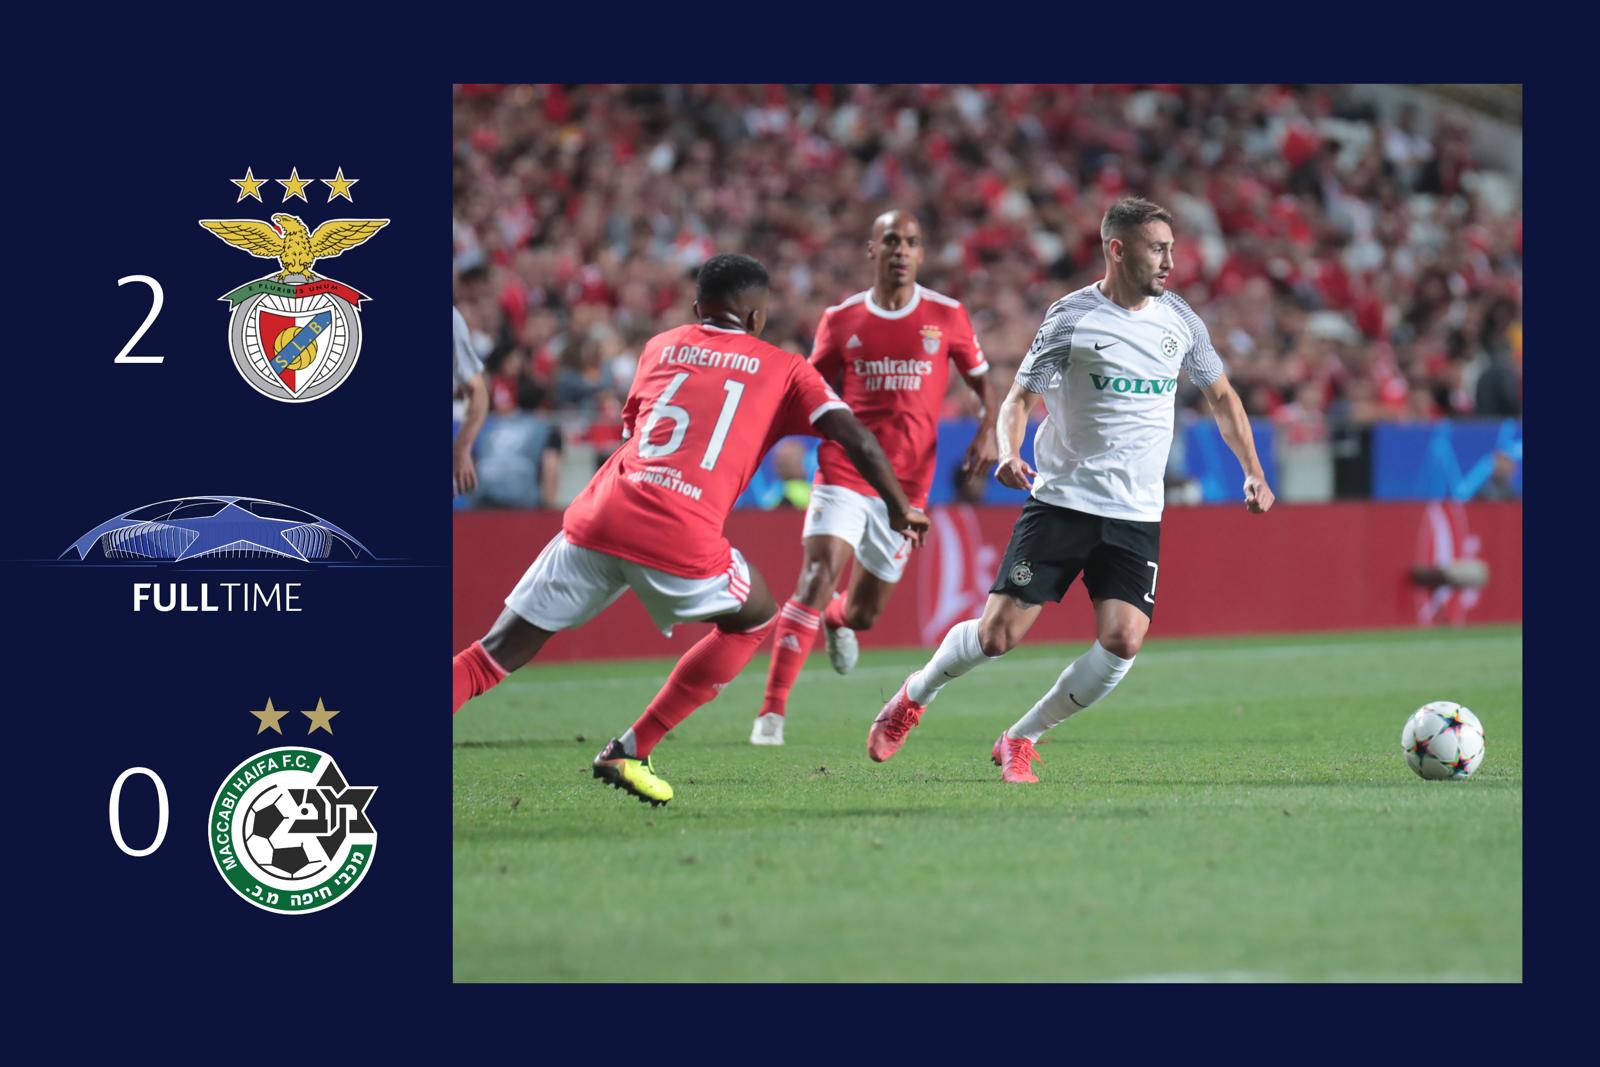 Benfica - Maccabi Haifa 2:0